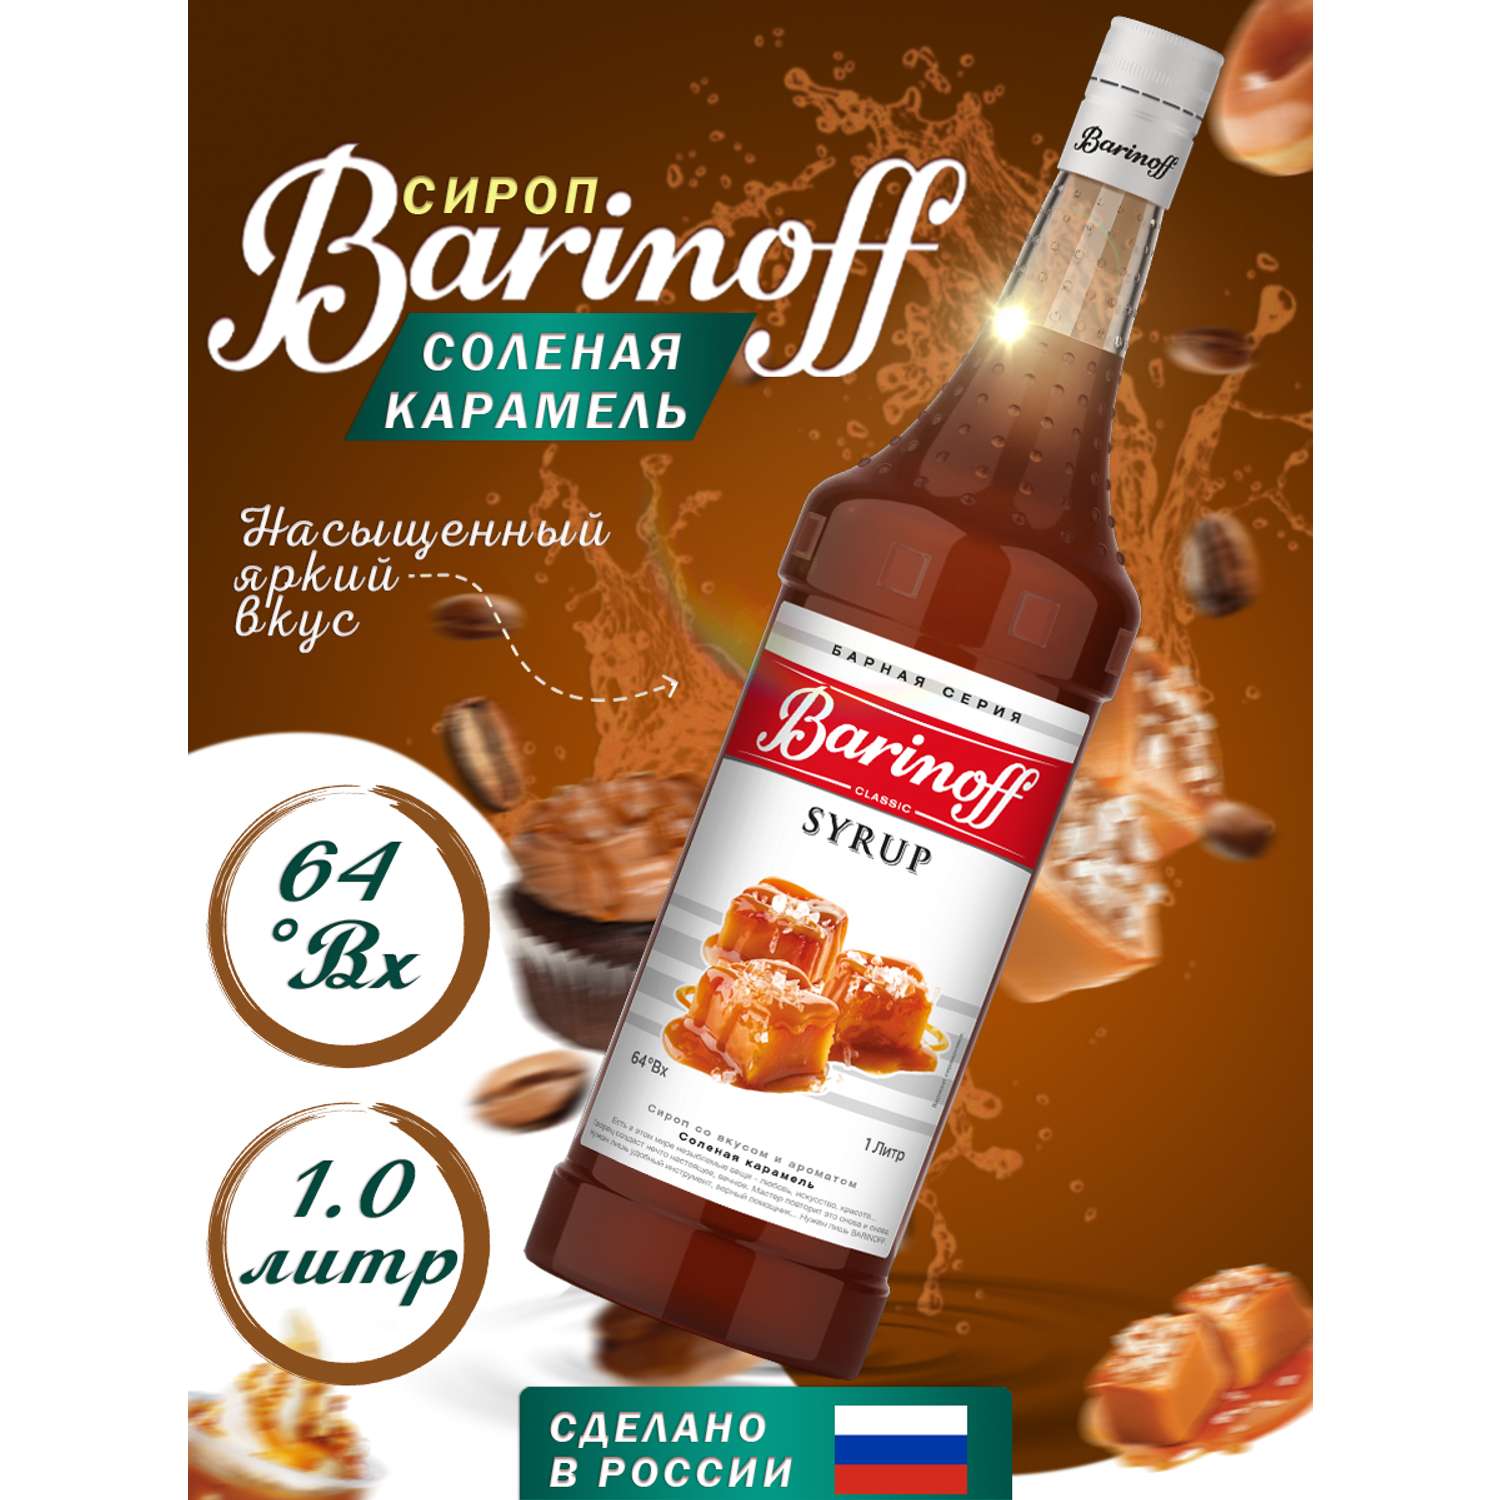 Сироп Barinoff Соленая карамель для кофе и коктейлей 1л - фото 1